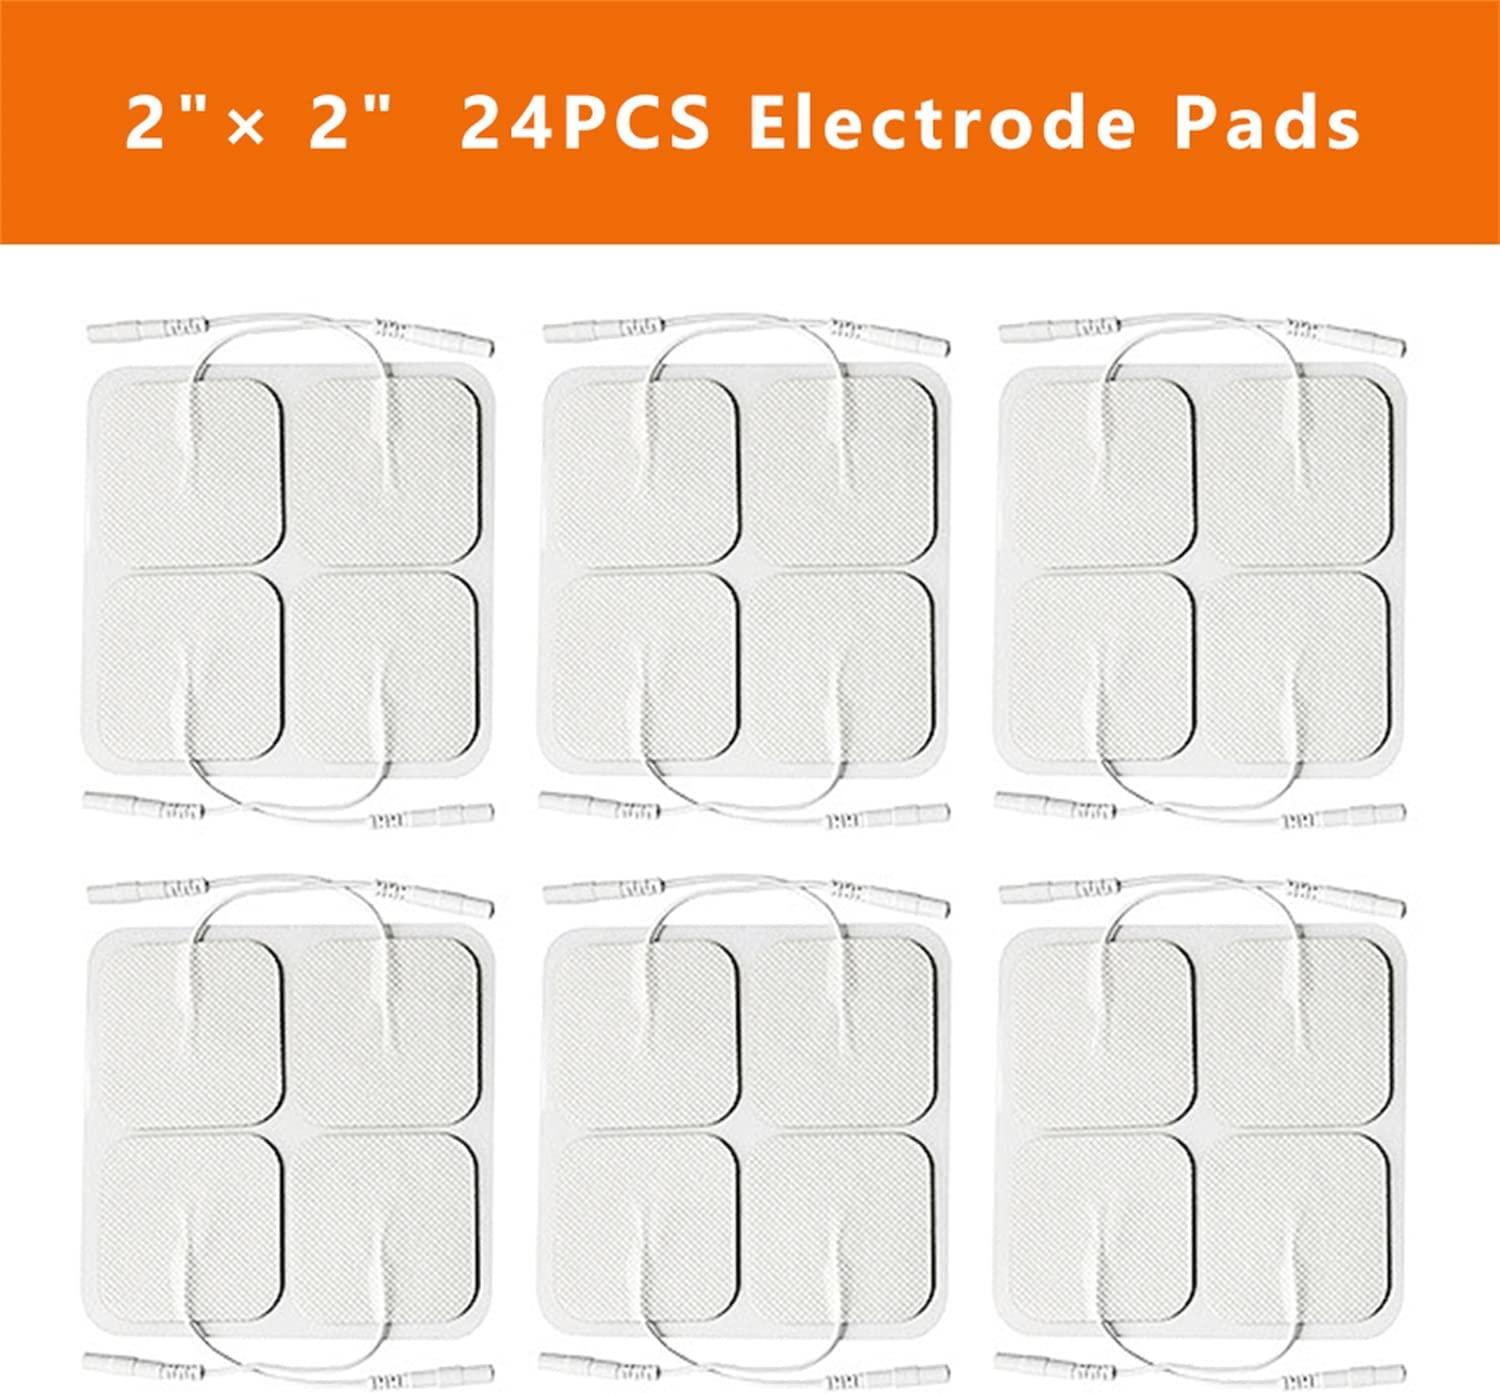 AUVON TENS Unit Replacement Pads 2x2 48 Pcs Value Pack, Reusable